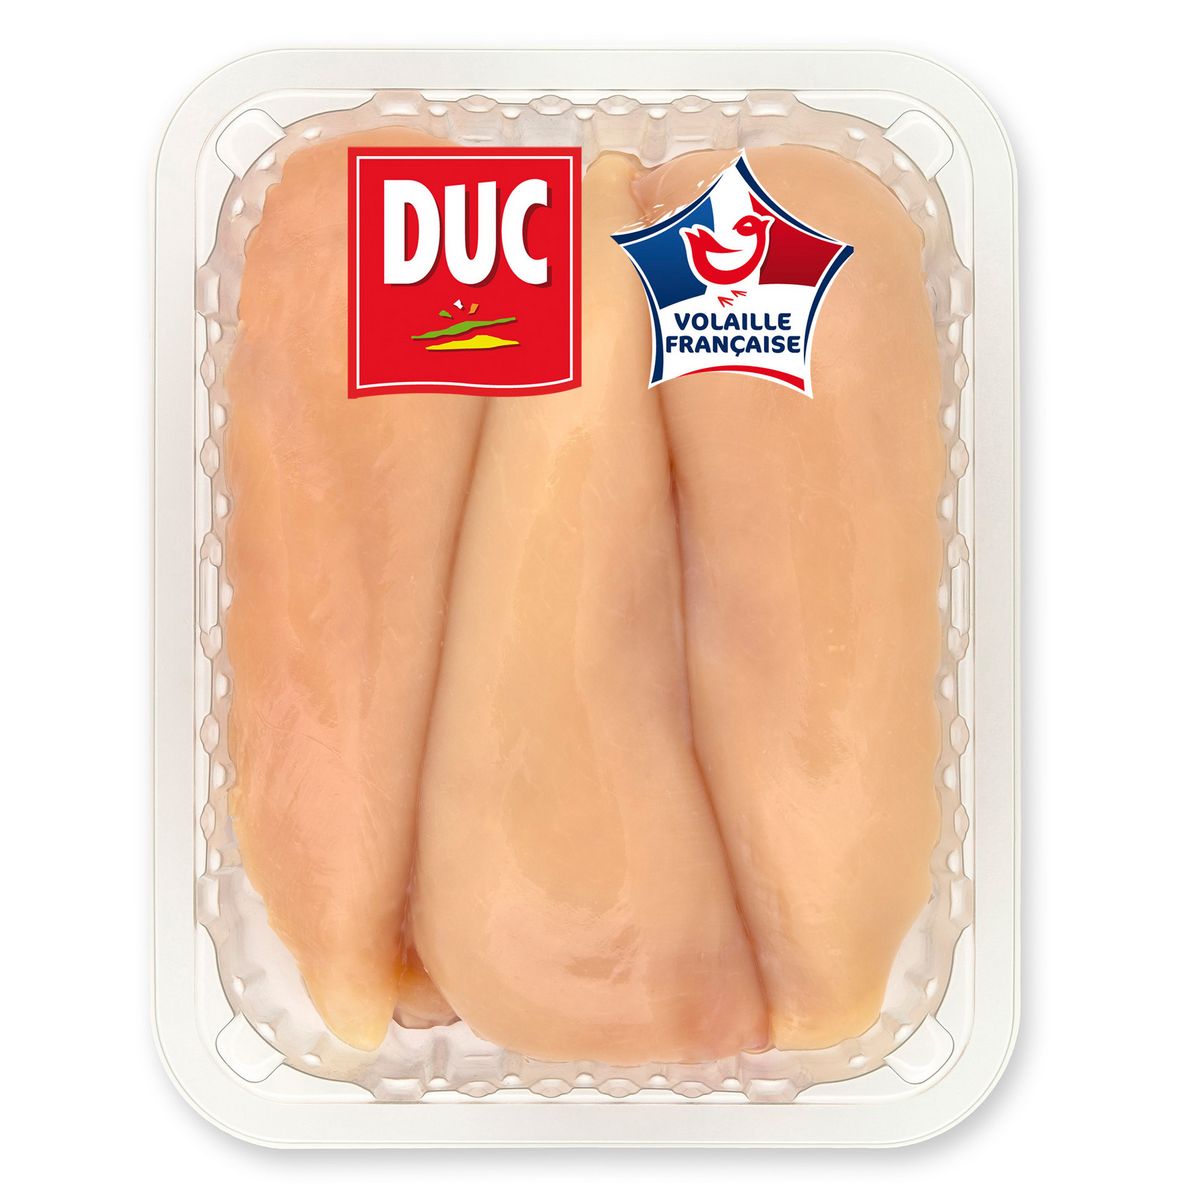 DUC Filets de poulet jaune 4 pièces 720g